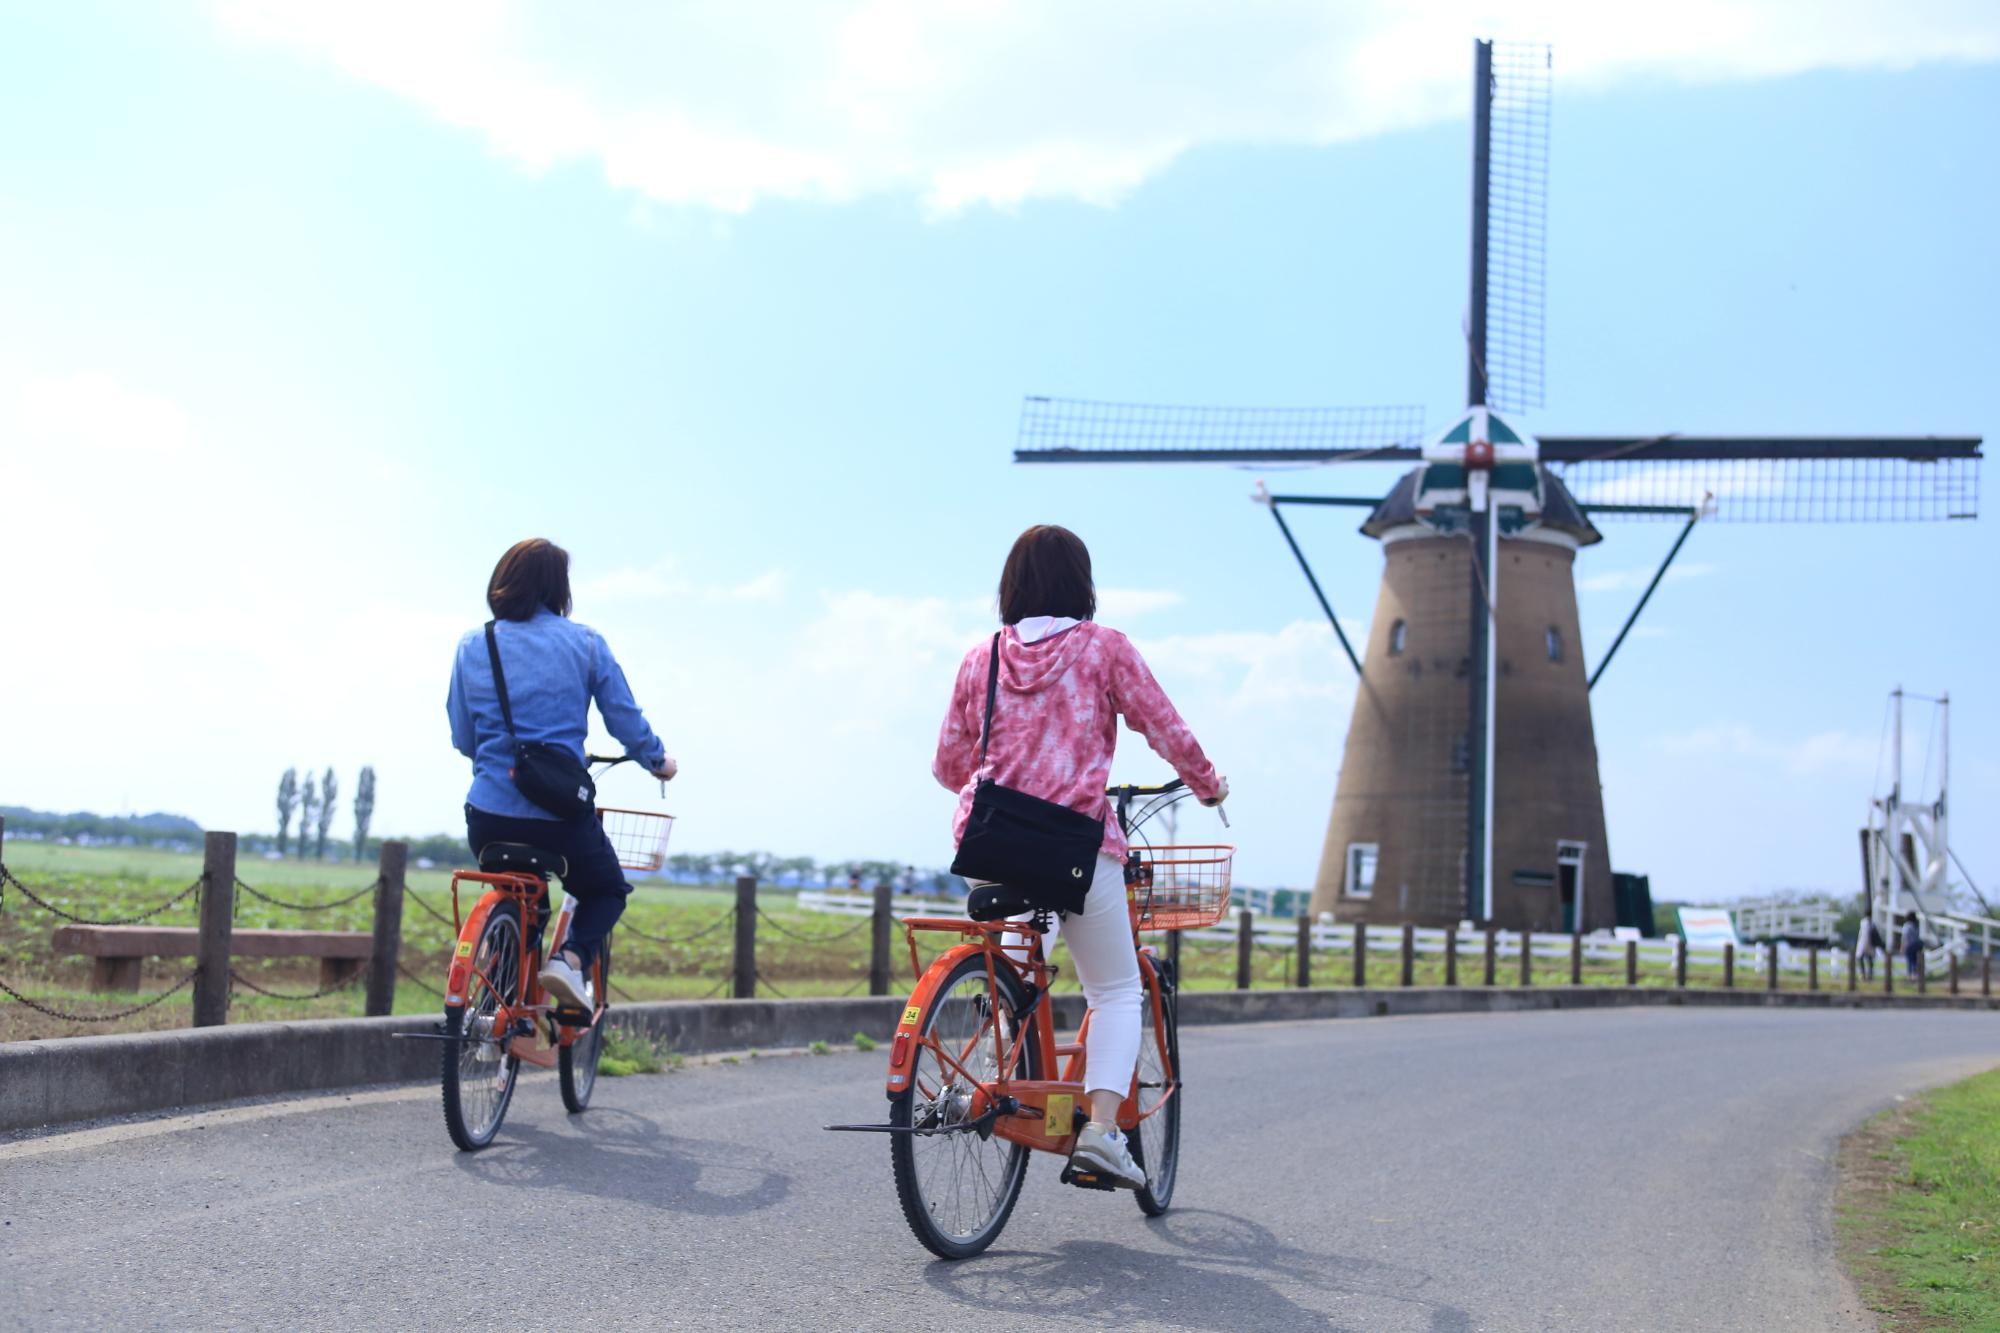 オランダ風車の前の道路をサイクリングしている2名の写真